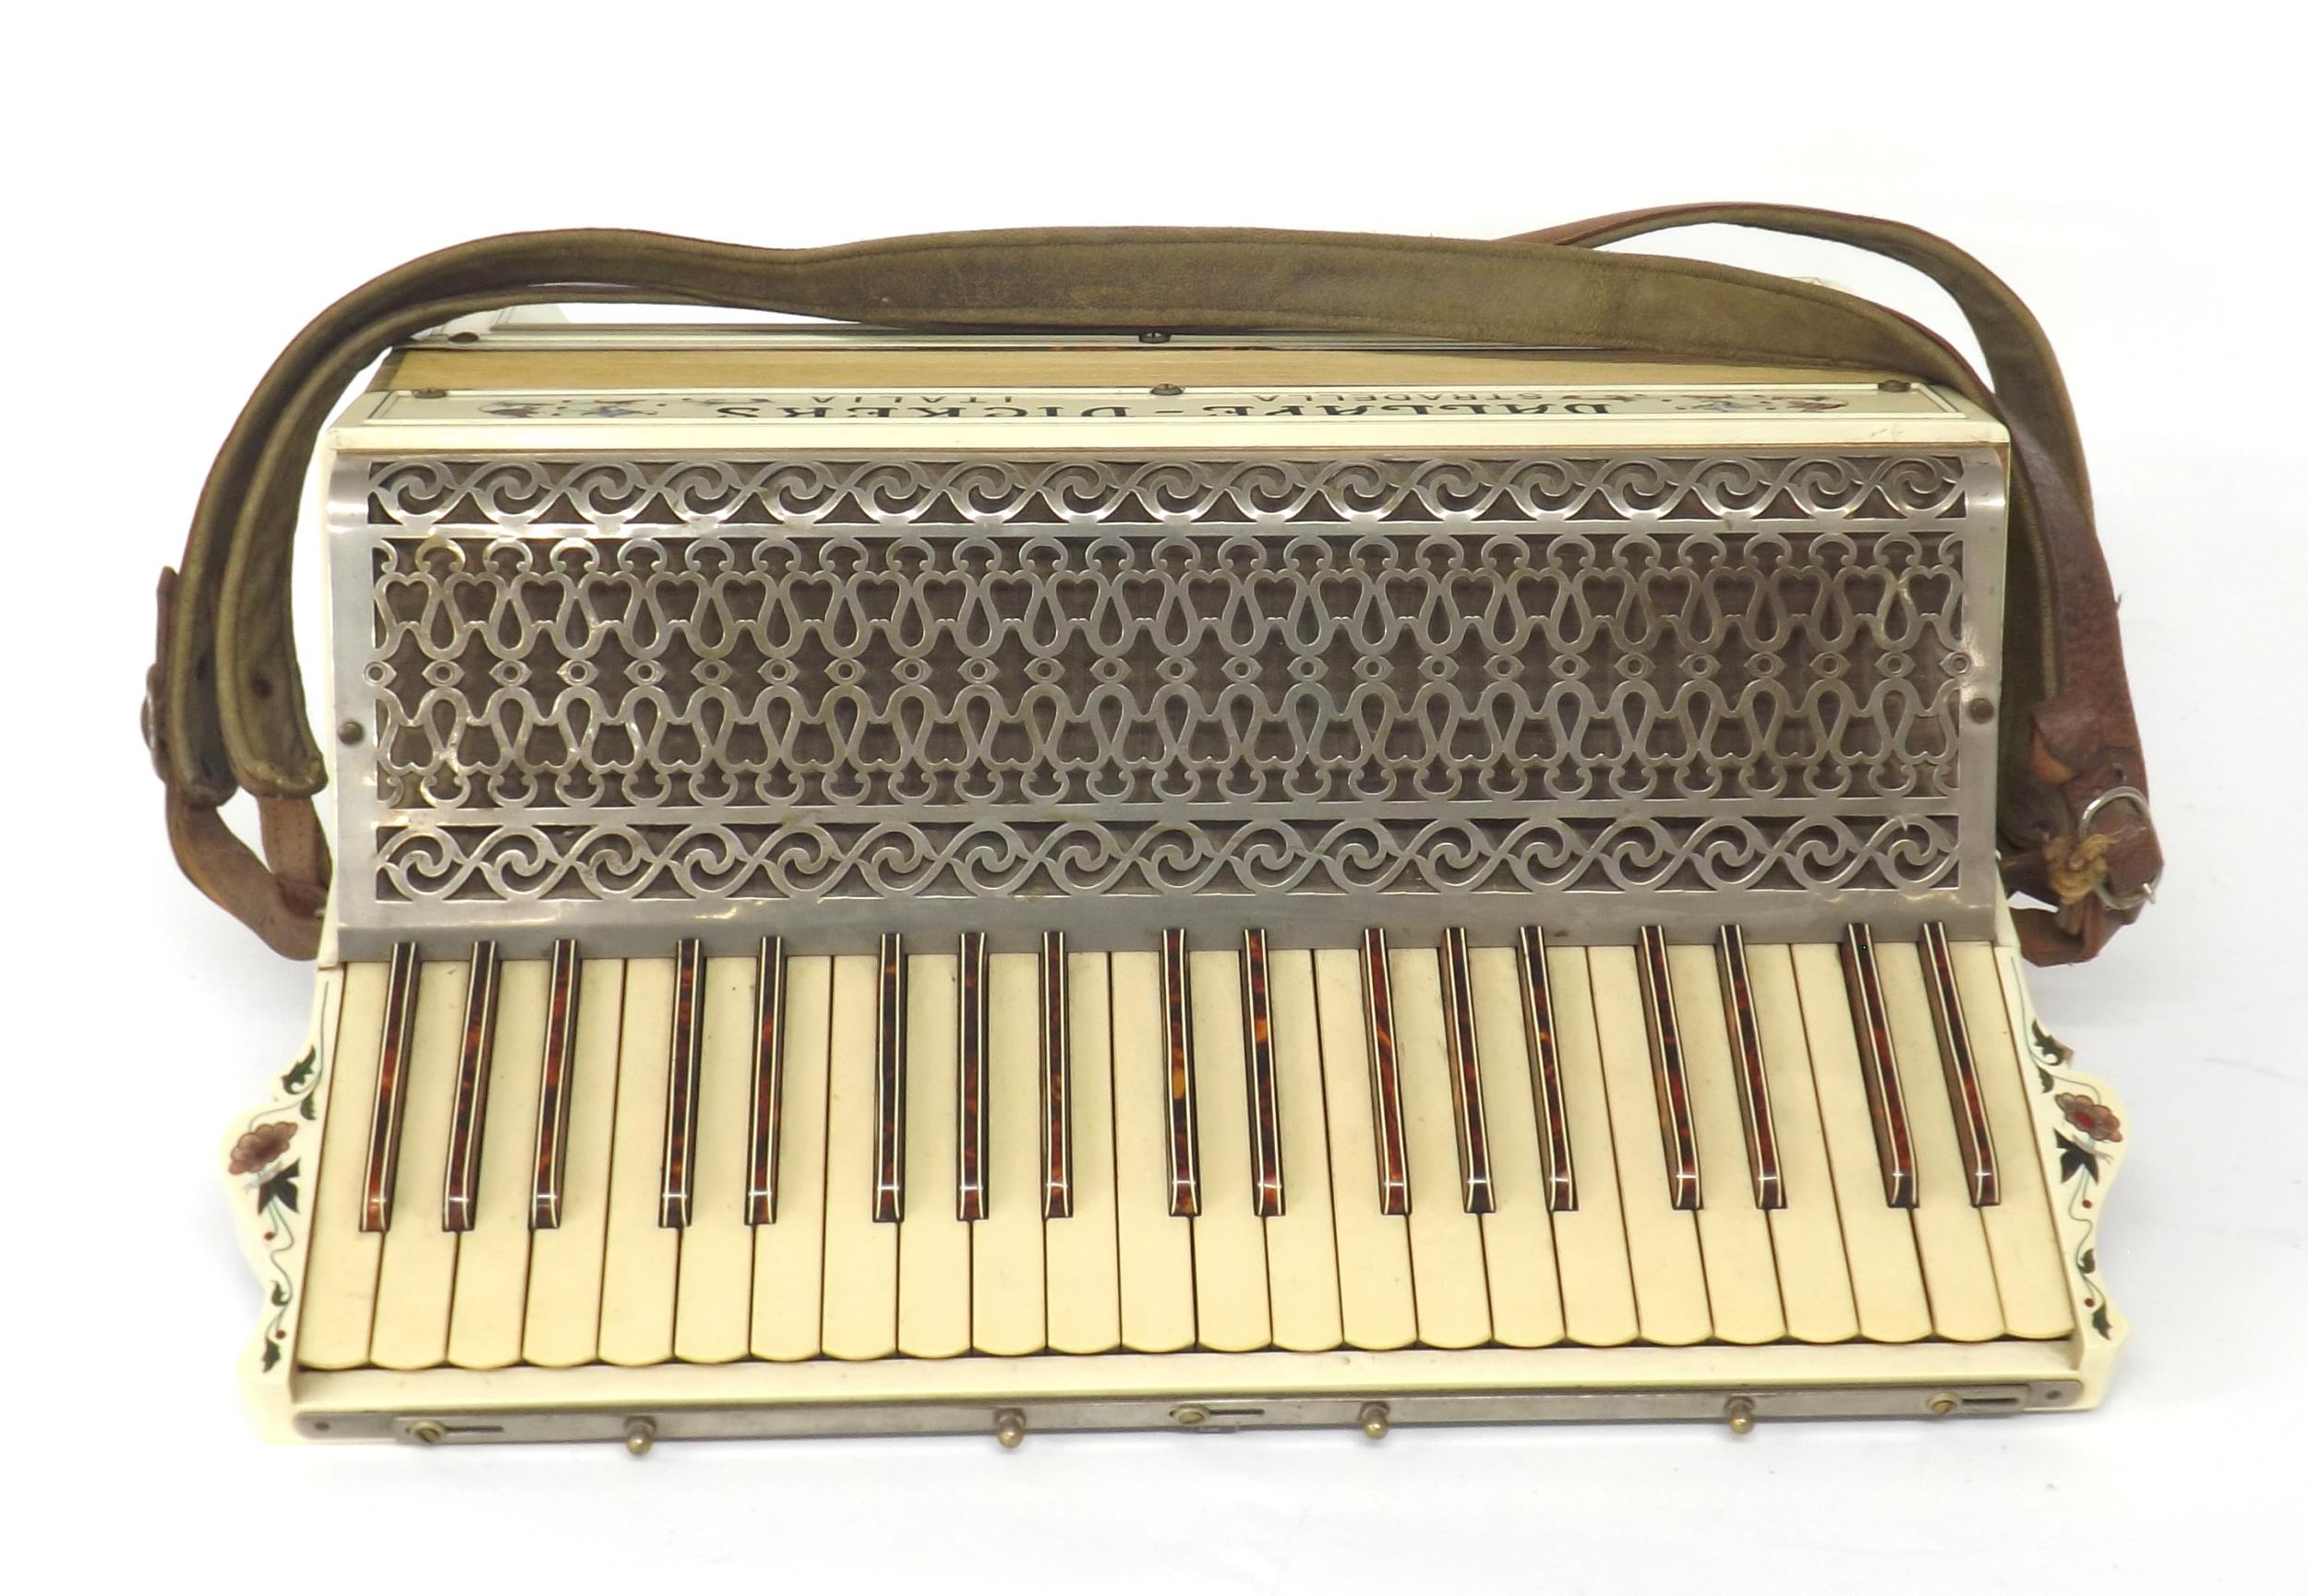 Dallape Vickers Stradella 120 bass piano accordion, white finish, case